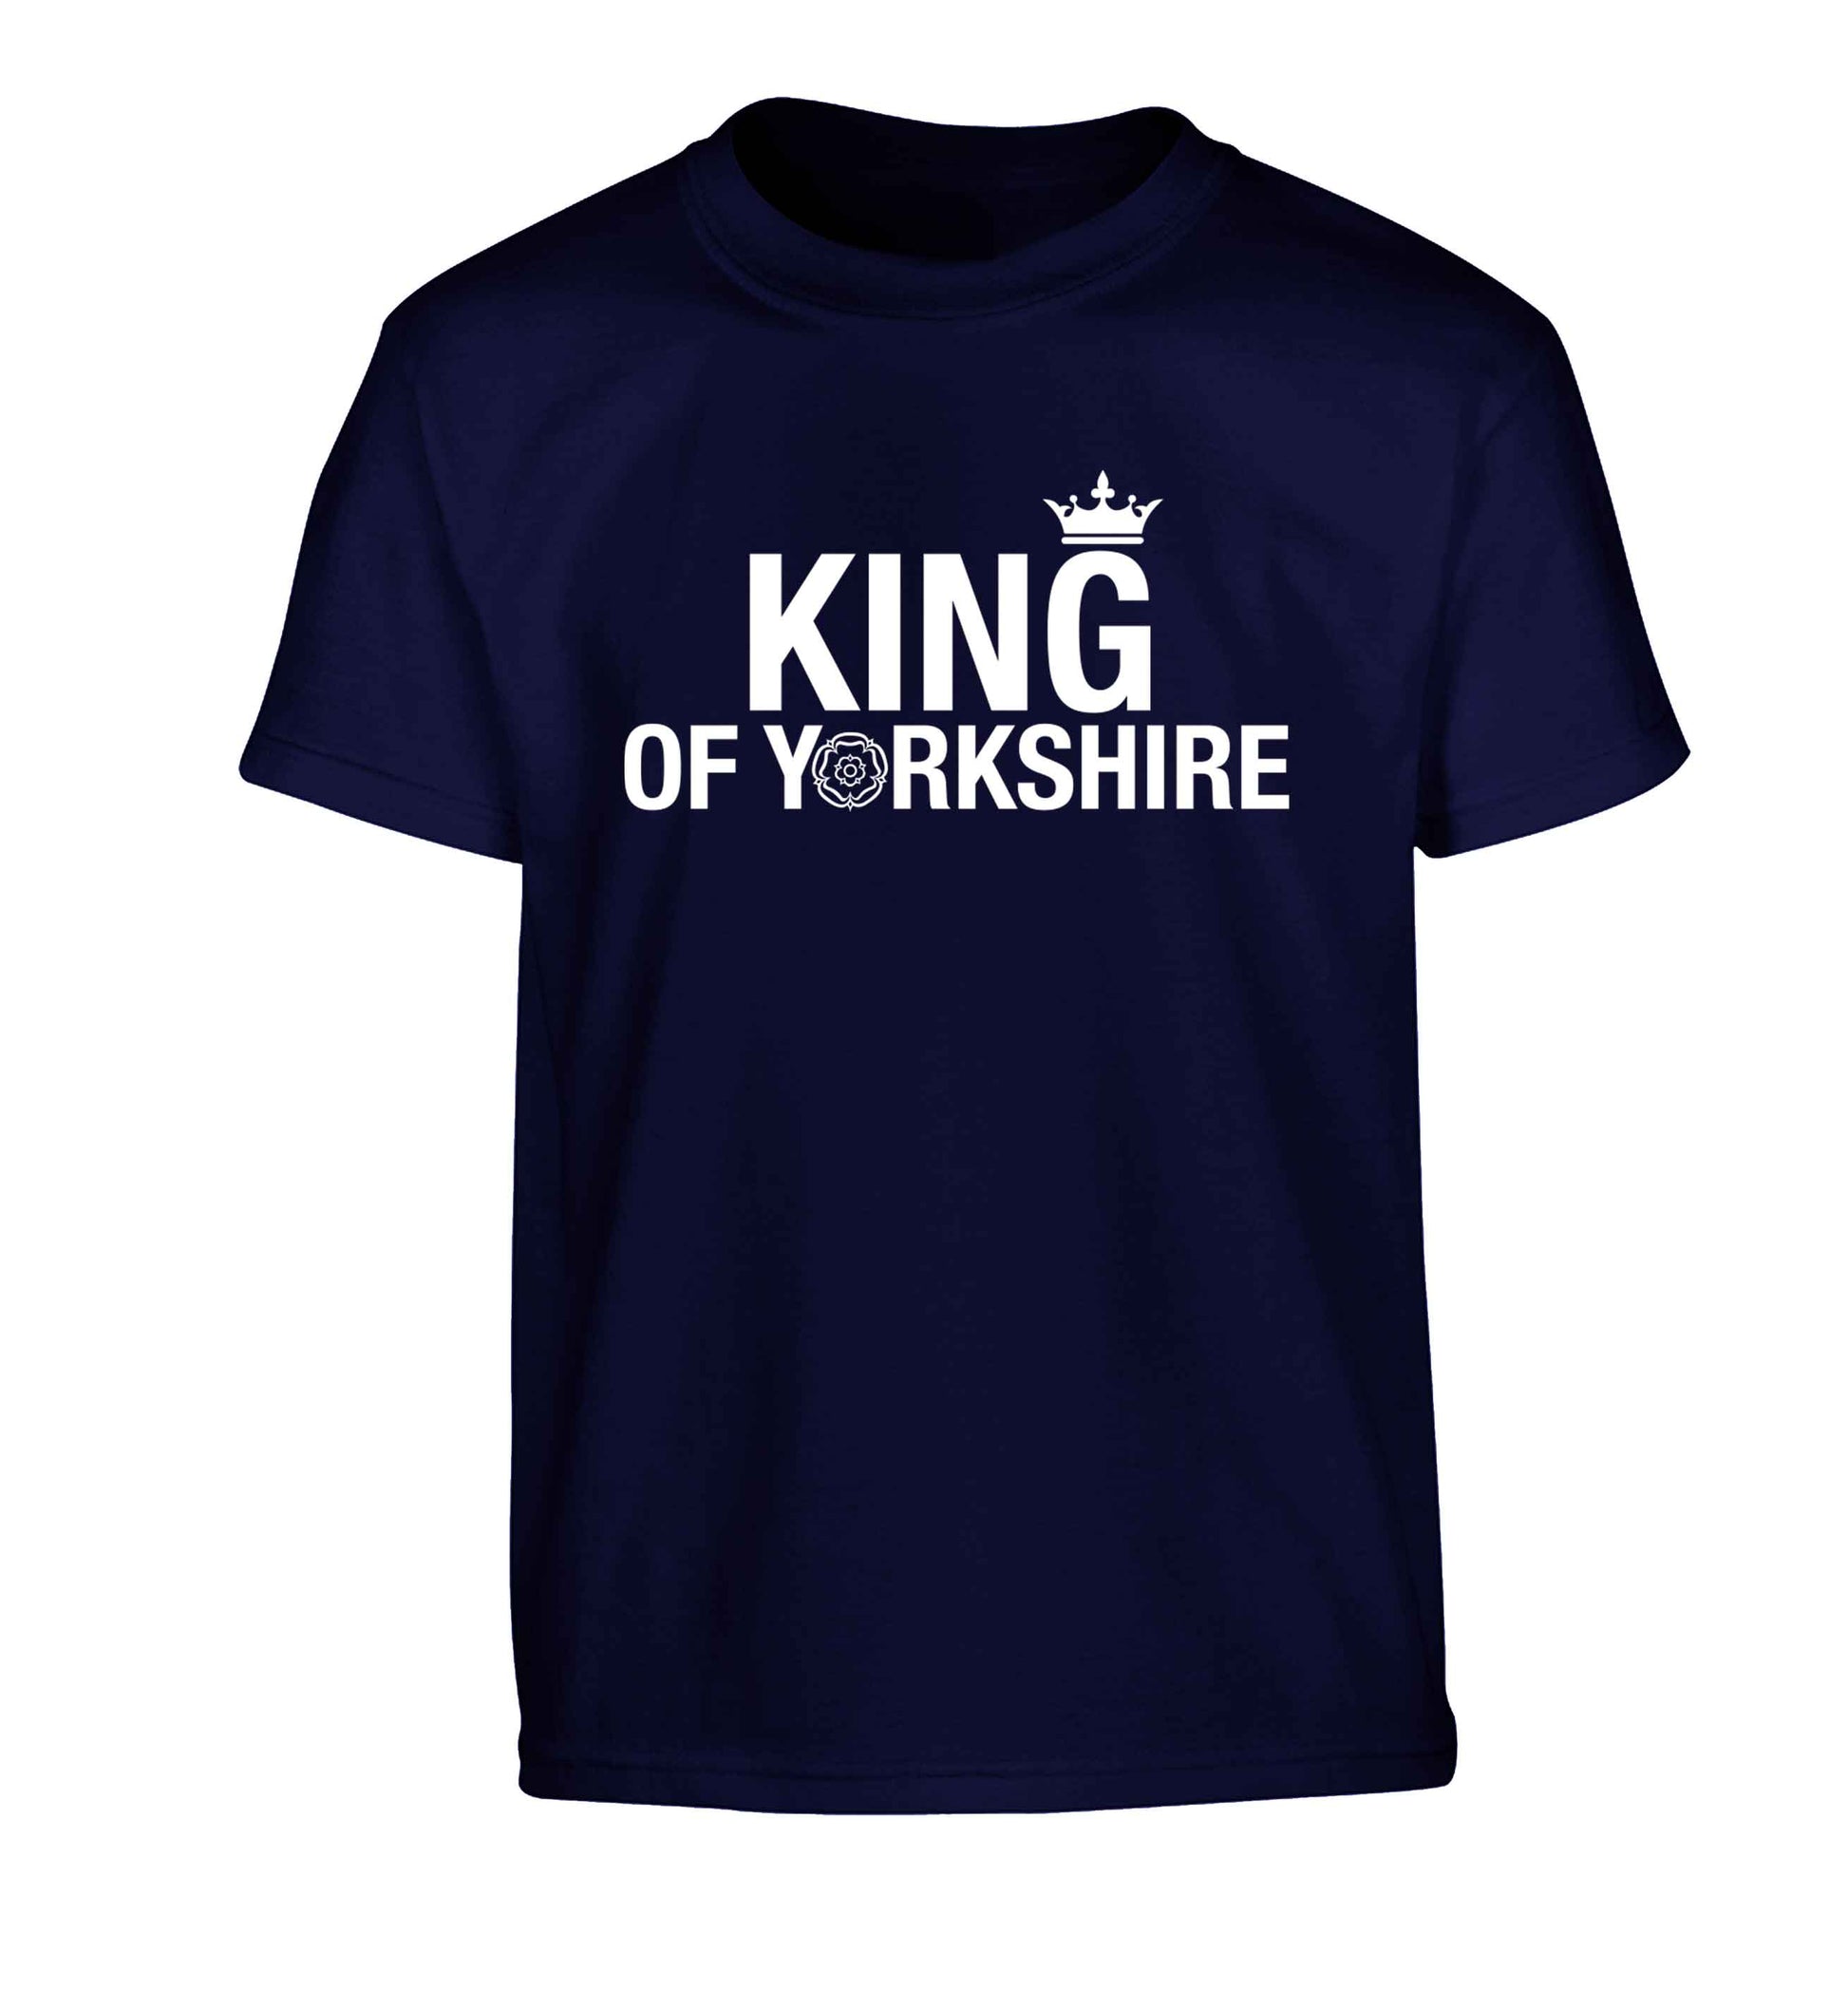 King of Yorkshire Children's navy Tshirt 12-13 Years